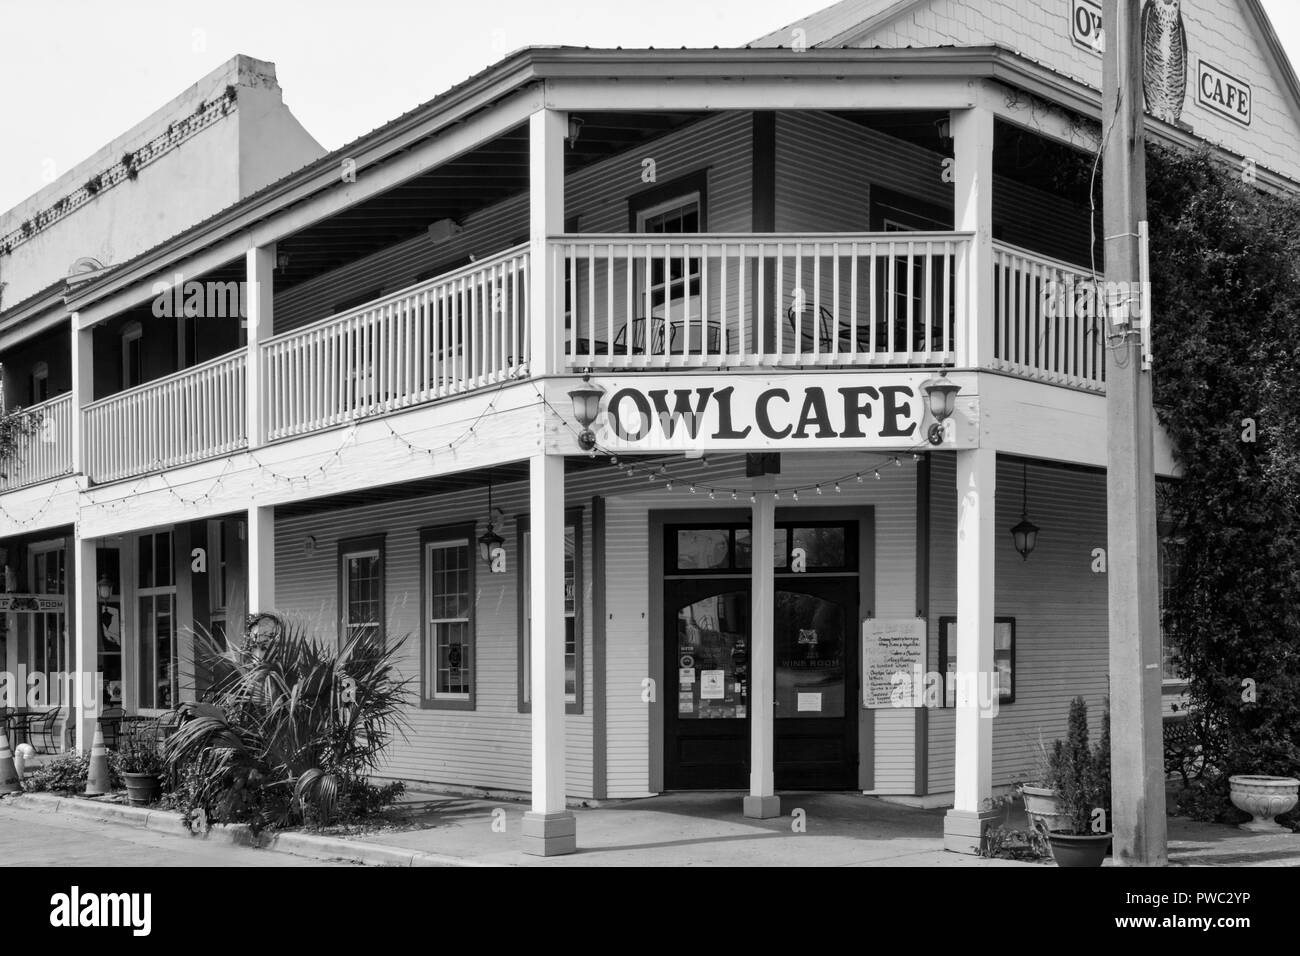 L'affascinante Owl Cafe in Apalachicola, FL, è stabilito in un classico Panhandle costiere, Florida vecchio stile architettonico, Foto Stock